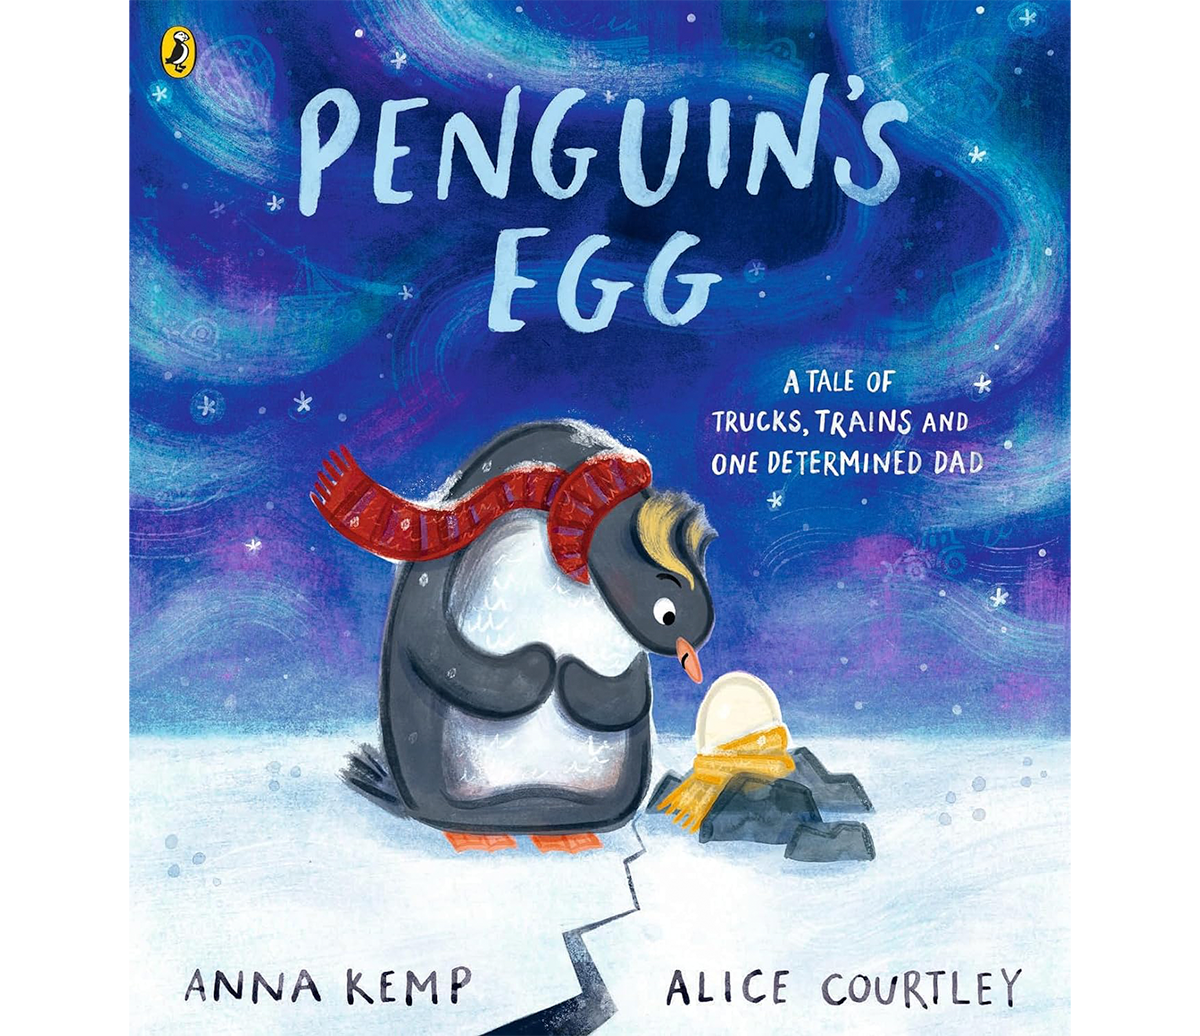 alice-courtley-penguins-egg-1.png